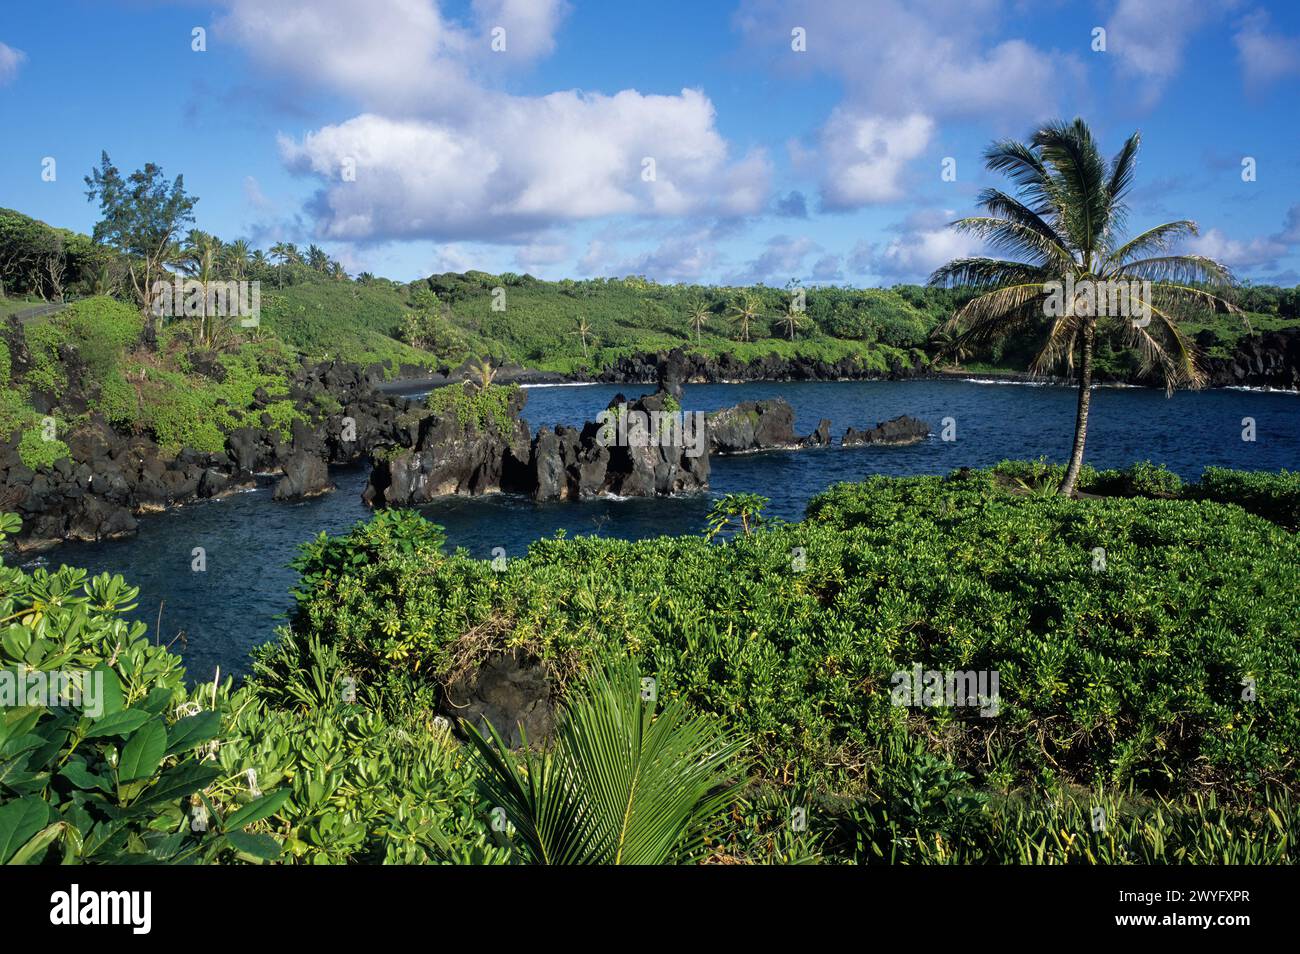 Maui, Hawaii, Stati Uniti - Parco statale Wai'anapanapa, insenatura dell'oceano, spiaggia, roccia vulcanica nera Foto Stock